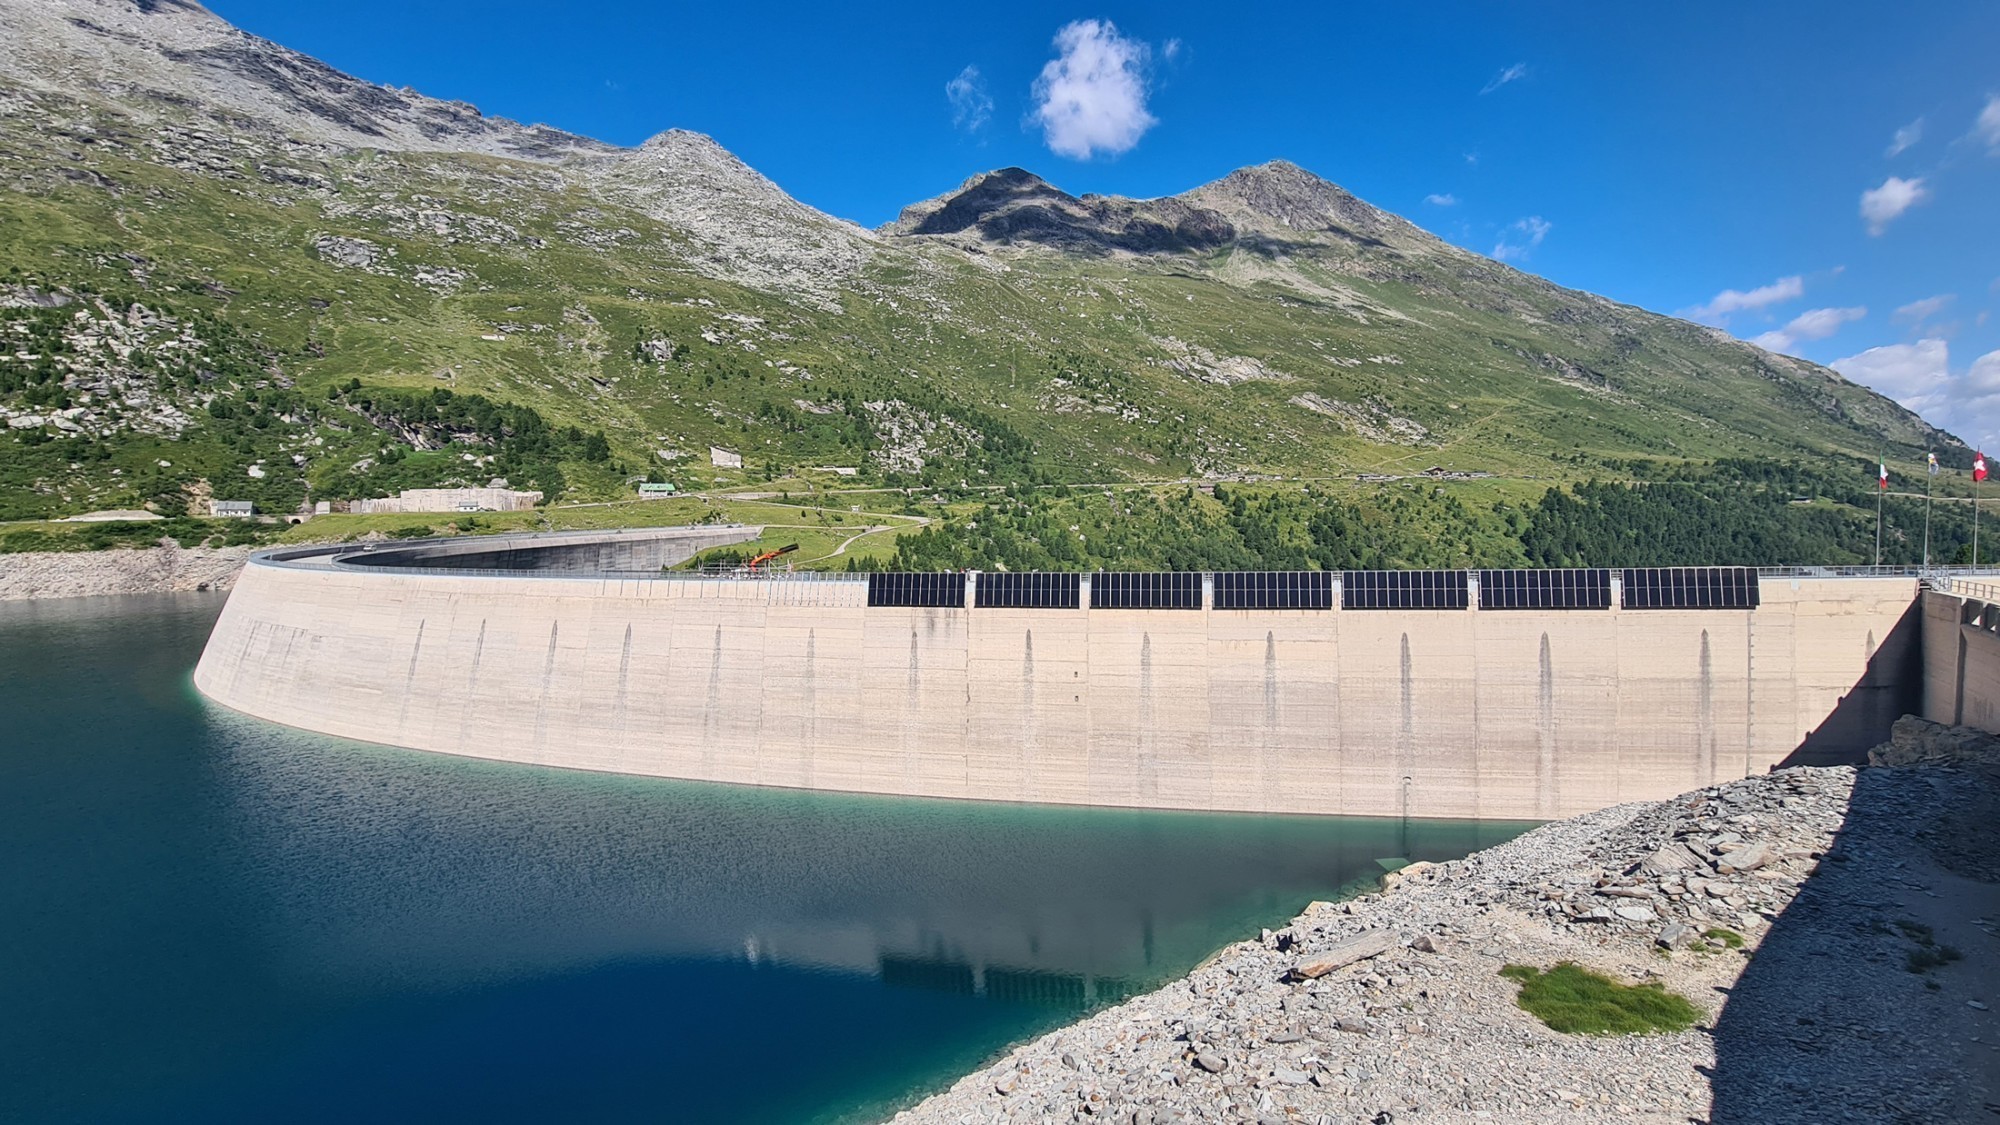 Les travaux de construction de l'installation photovoltaïque sur le barrage de Valle di Lei ont commencé. Ils sont soutenus par la centrale électrique de la ville de Zurich (EWZ).